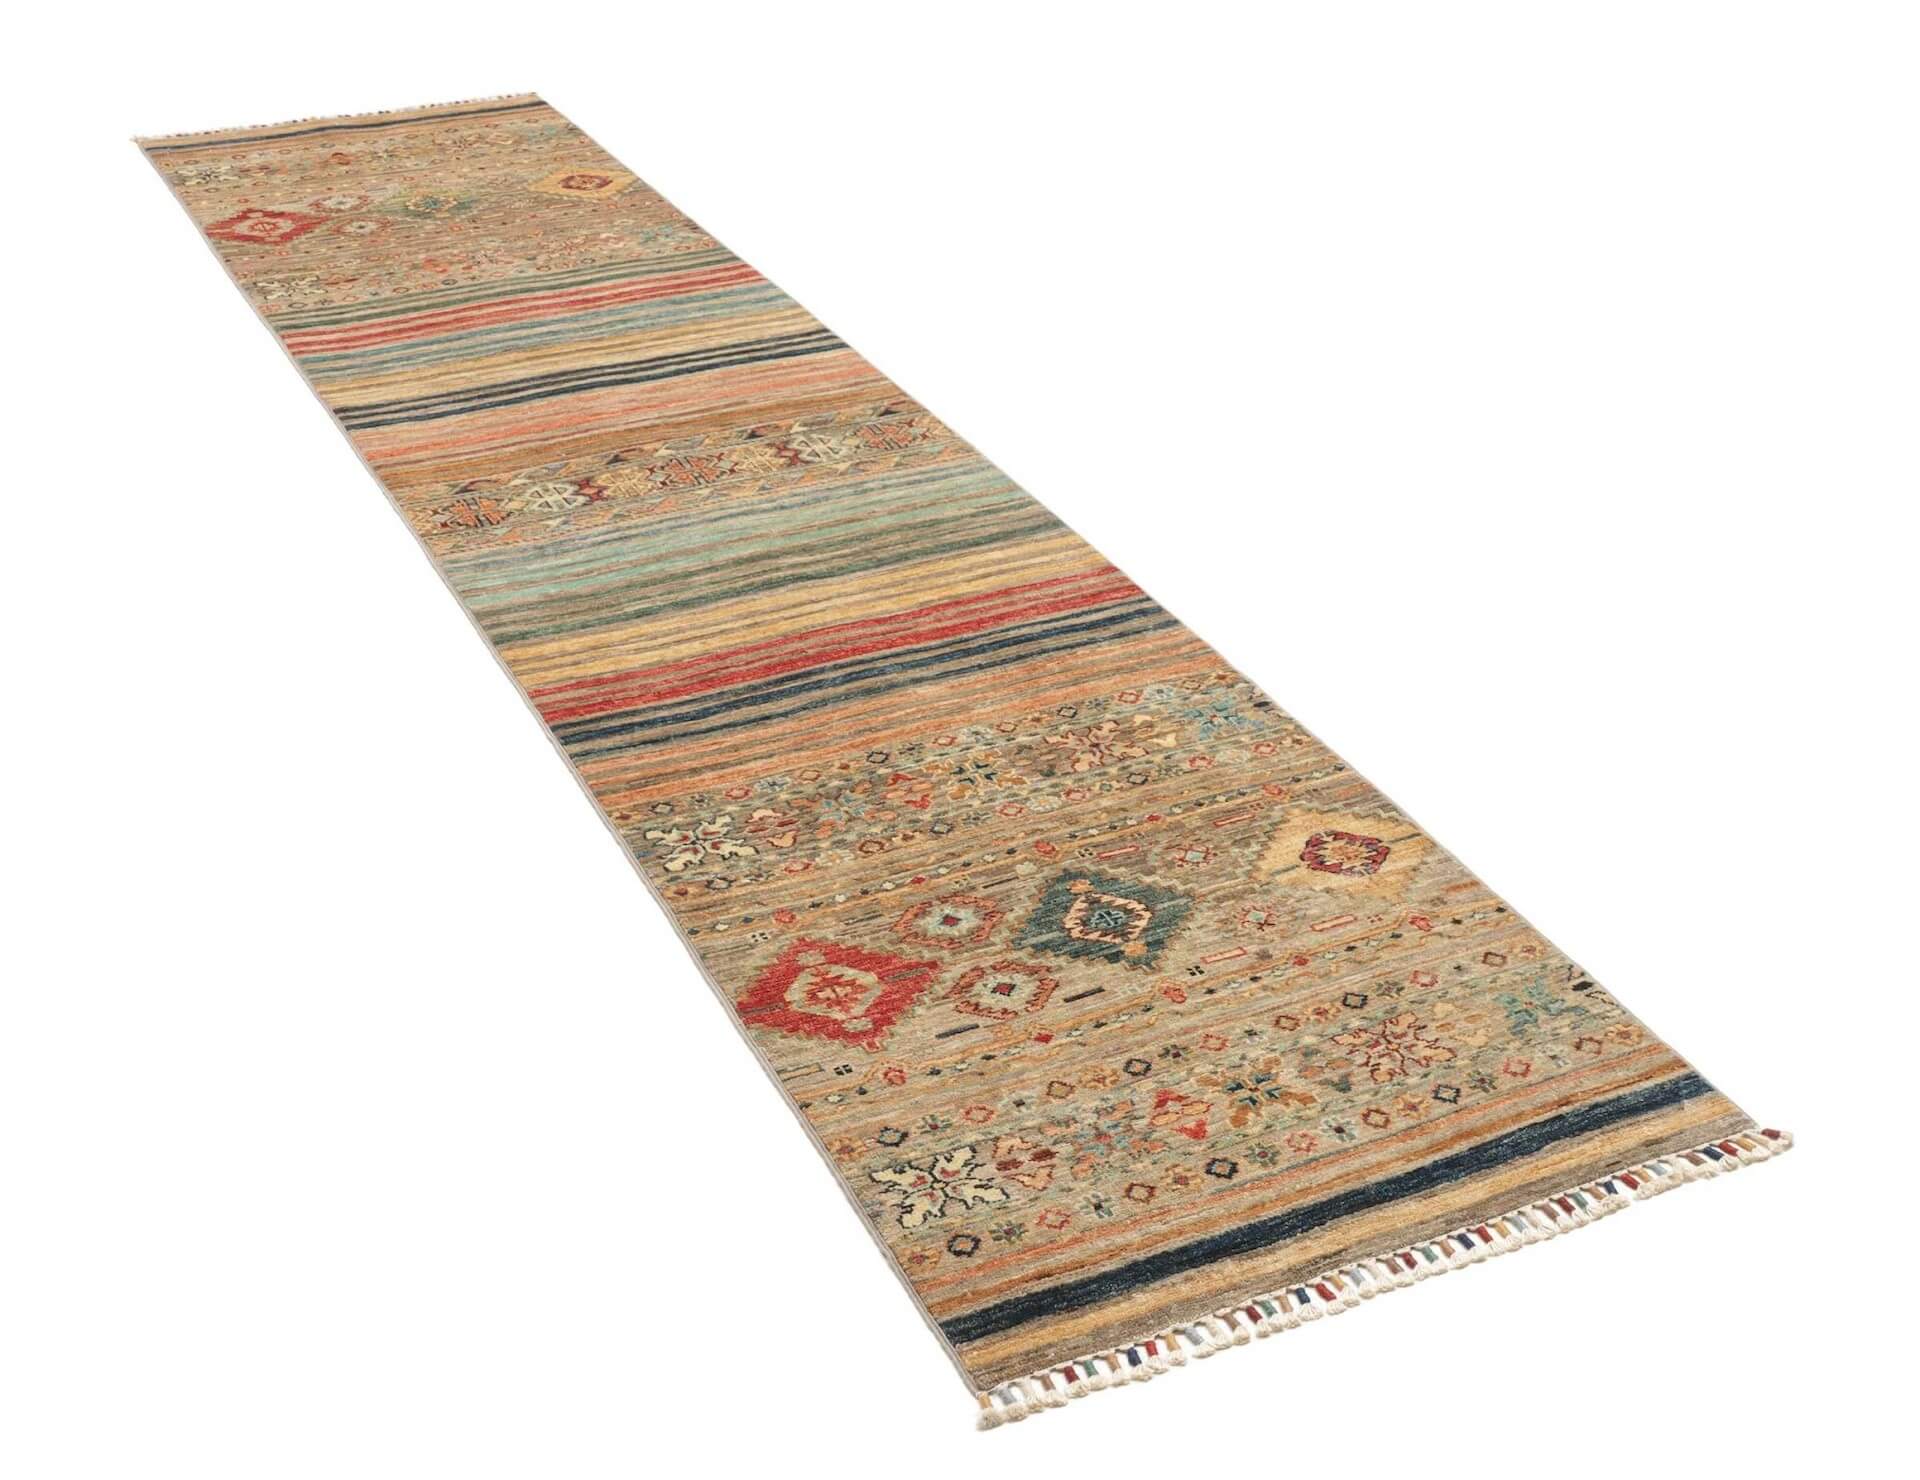 Afghanteppich Rubin Multy Runner, handgeknüpft , Schurwolle, 075 x 337 cm, mehrfarbig, Schrägansicht